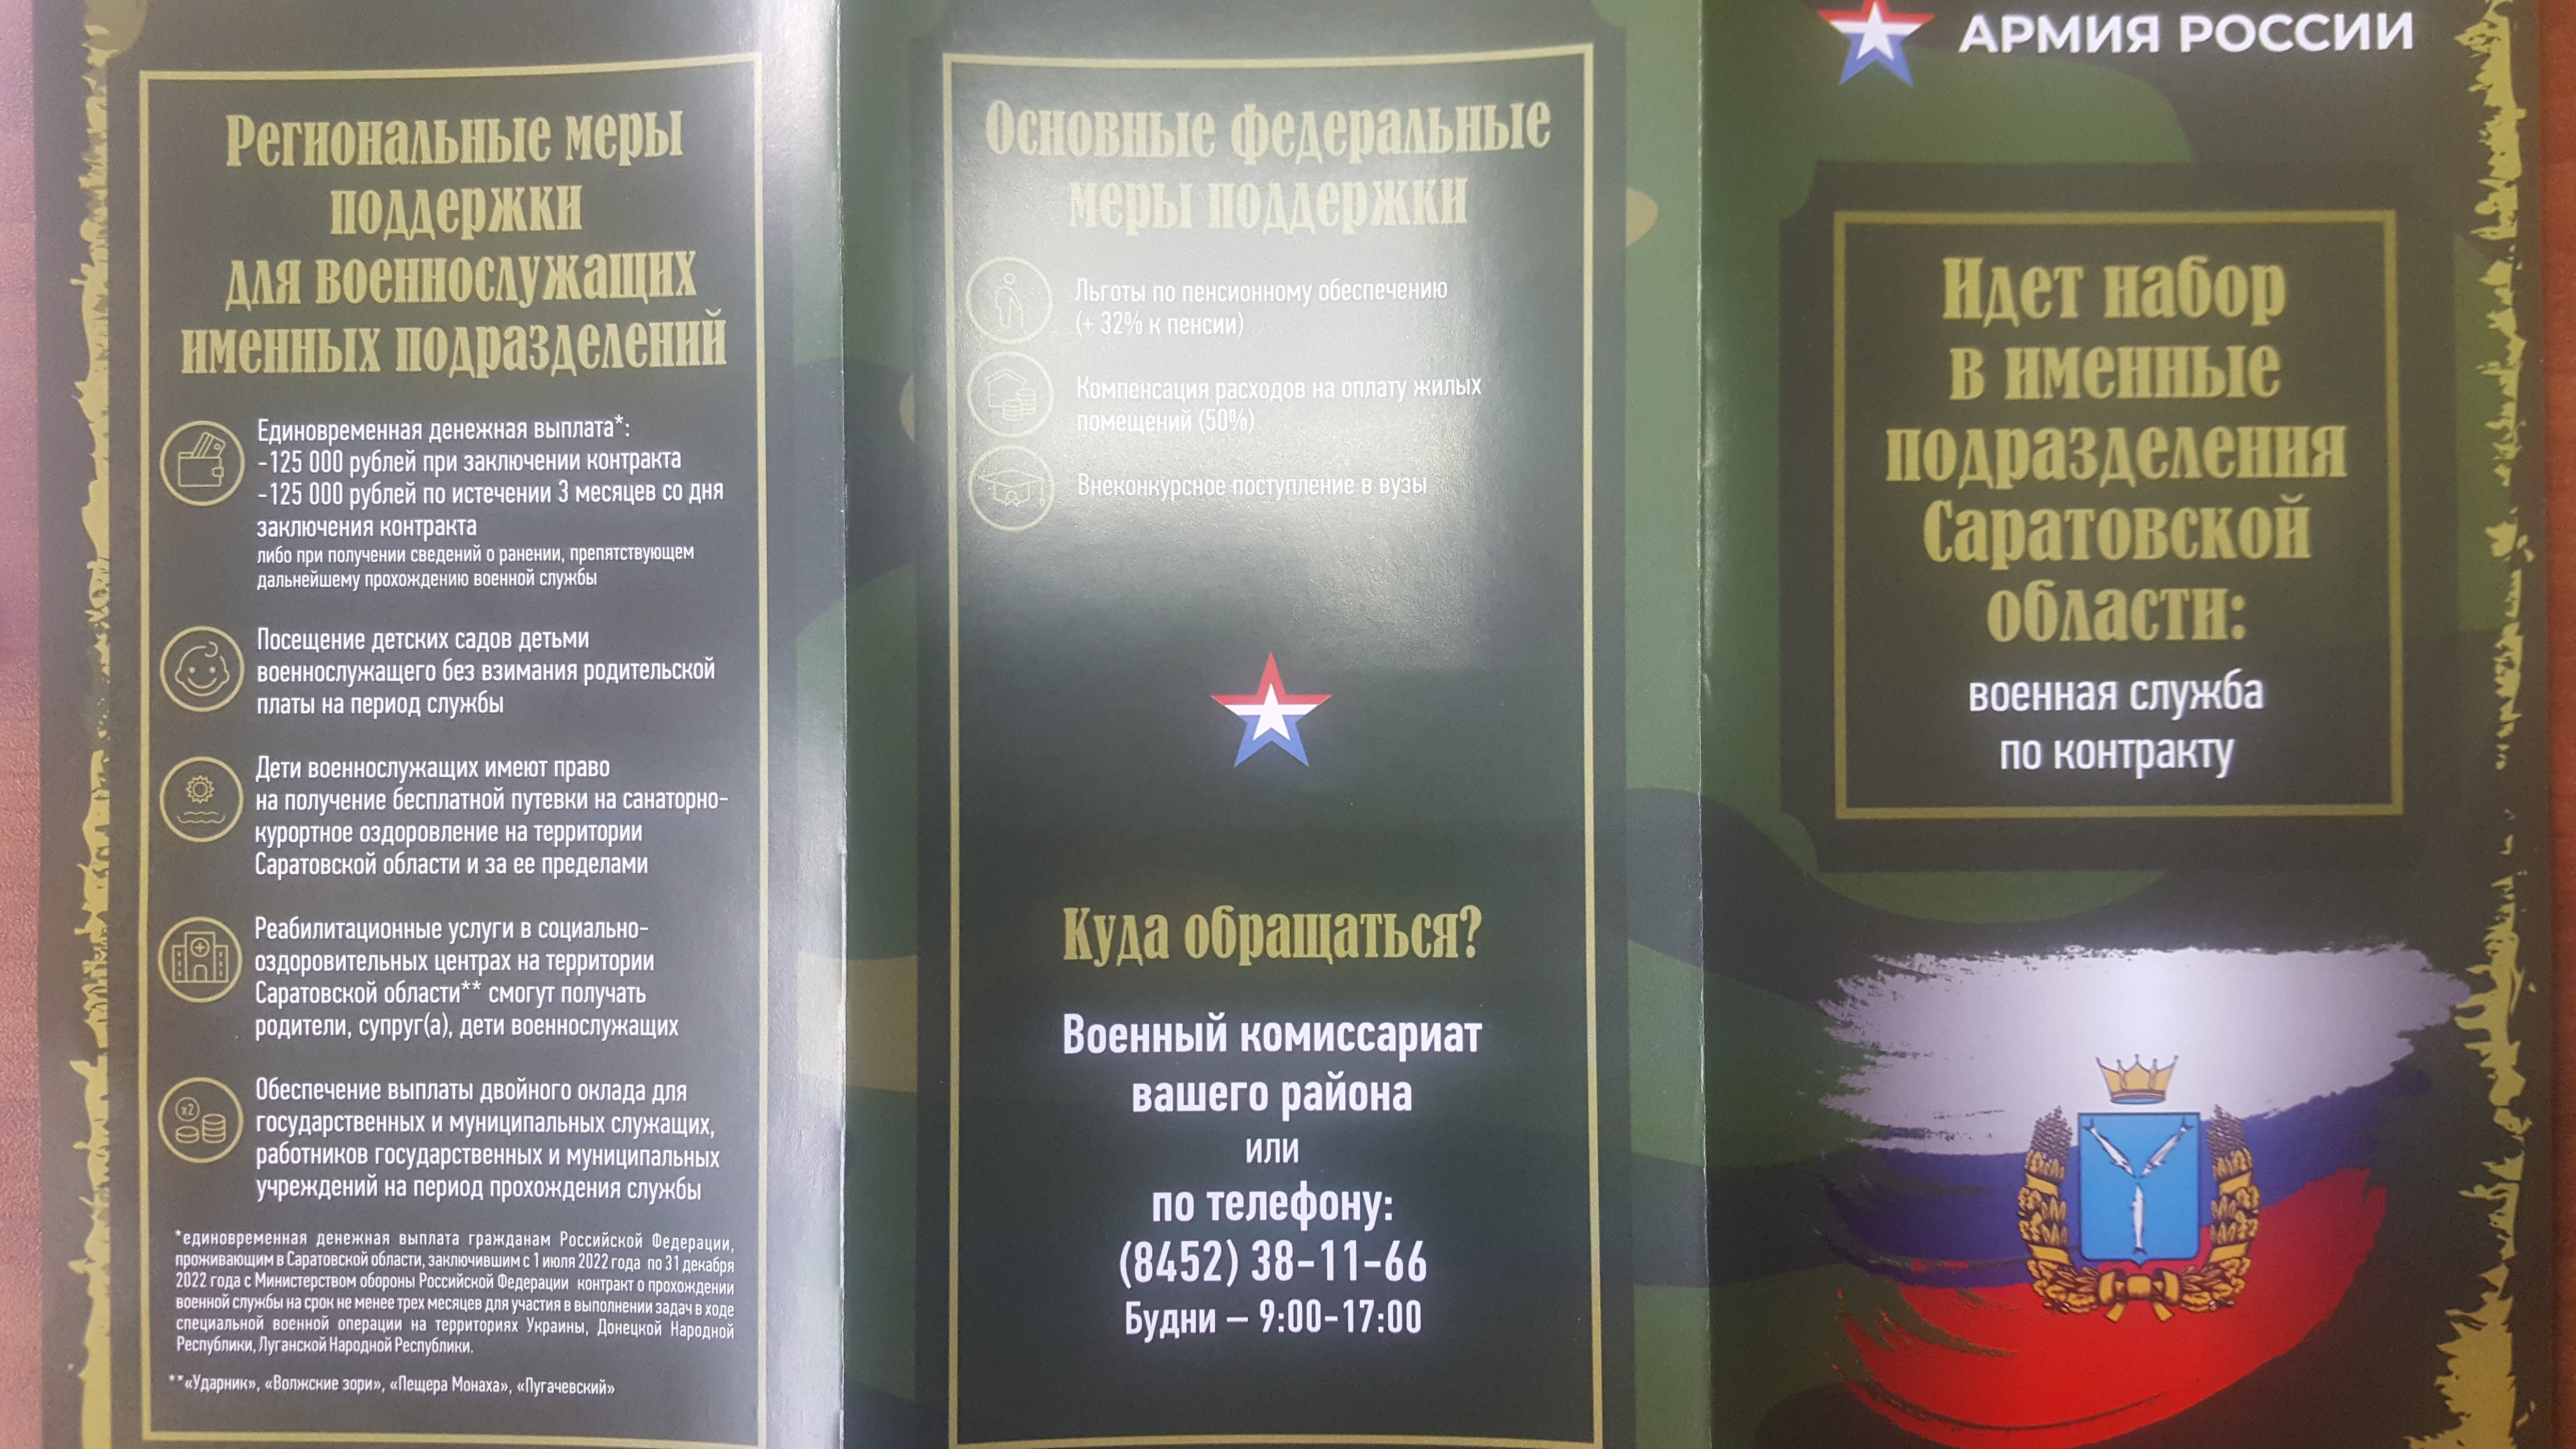 Идет набор в именные подразделения Саратовской области: военная служба по контракту.